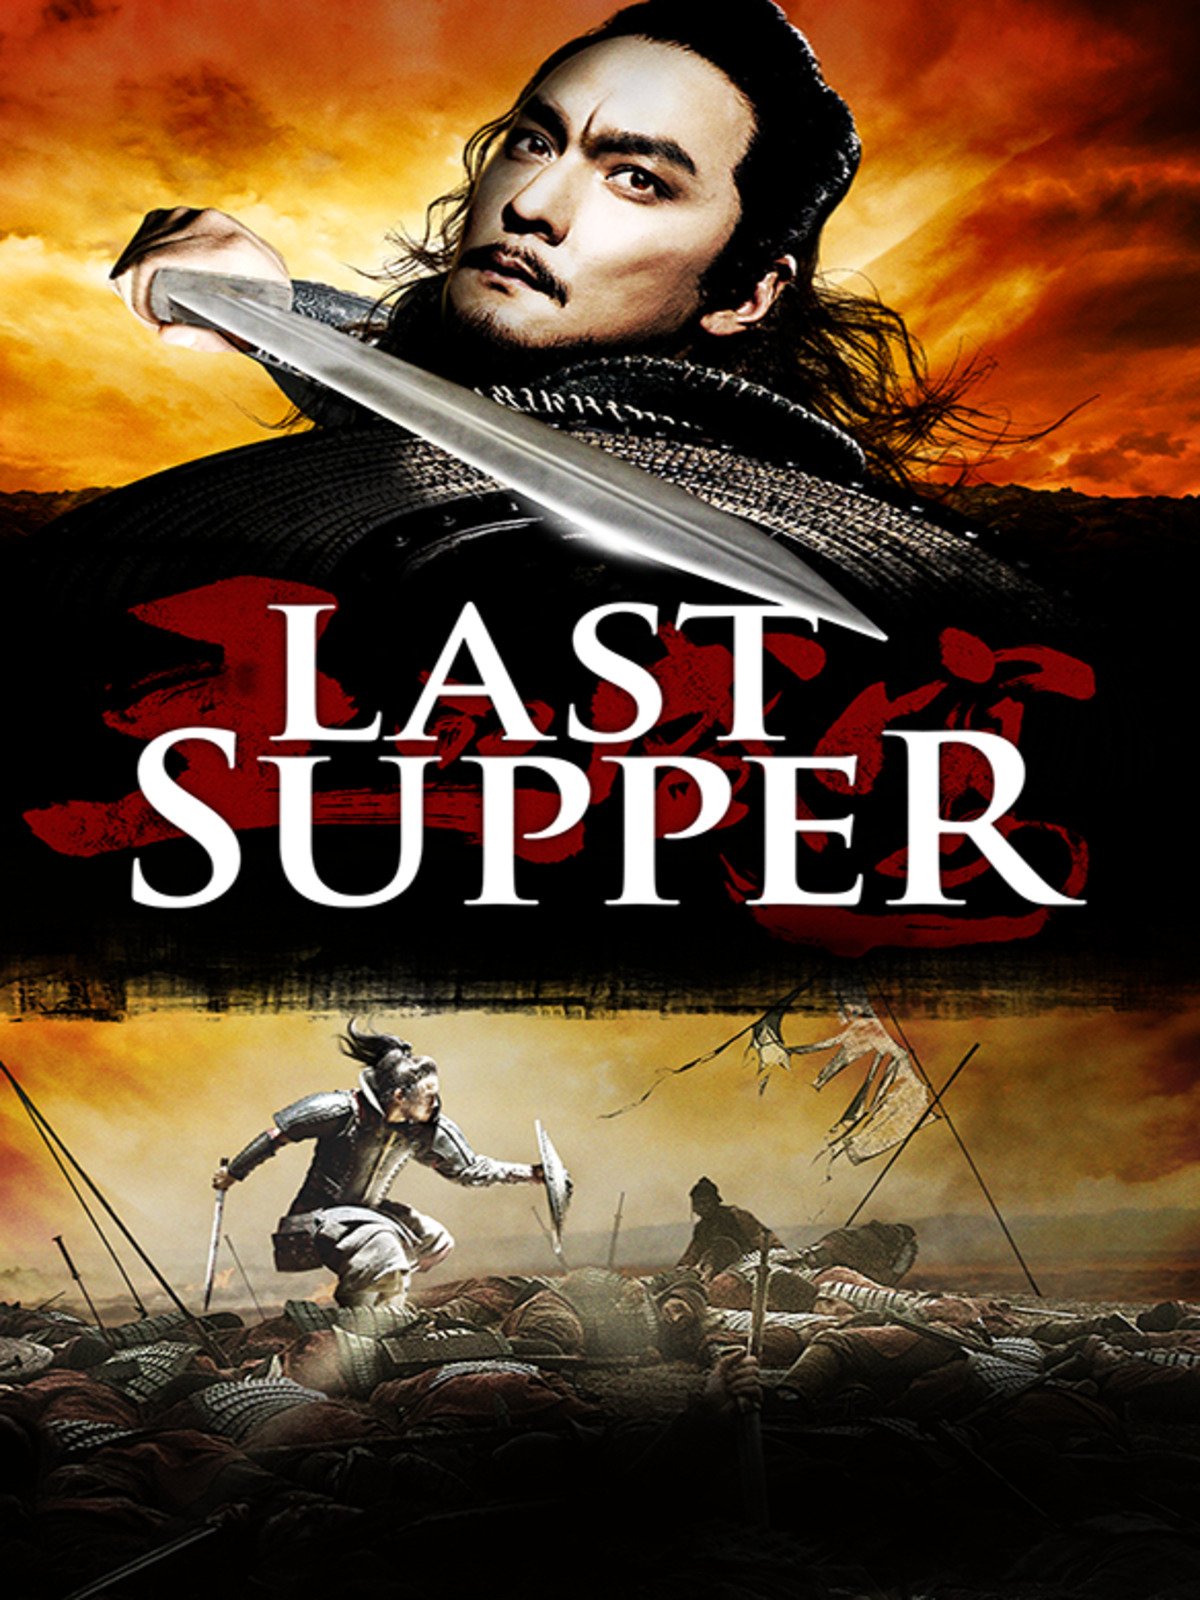 ดูหนังออนไลน์ ดูหนัง The Last Supper 2013 ฌ้อป๋าอ๋อง มหากาพย์ลำน้ำเลือด 037moviefree